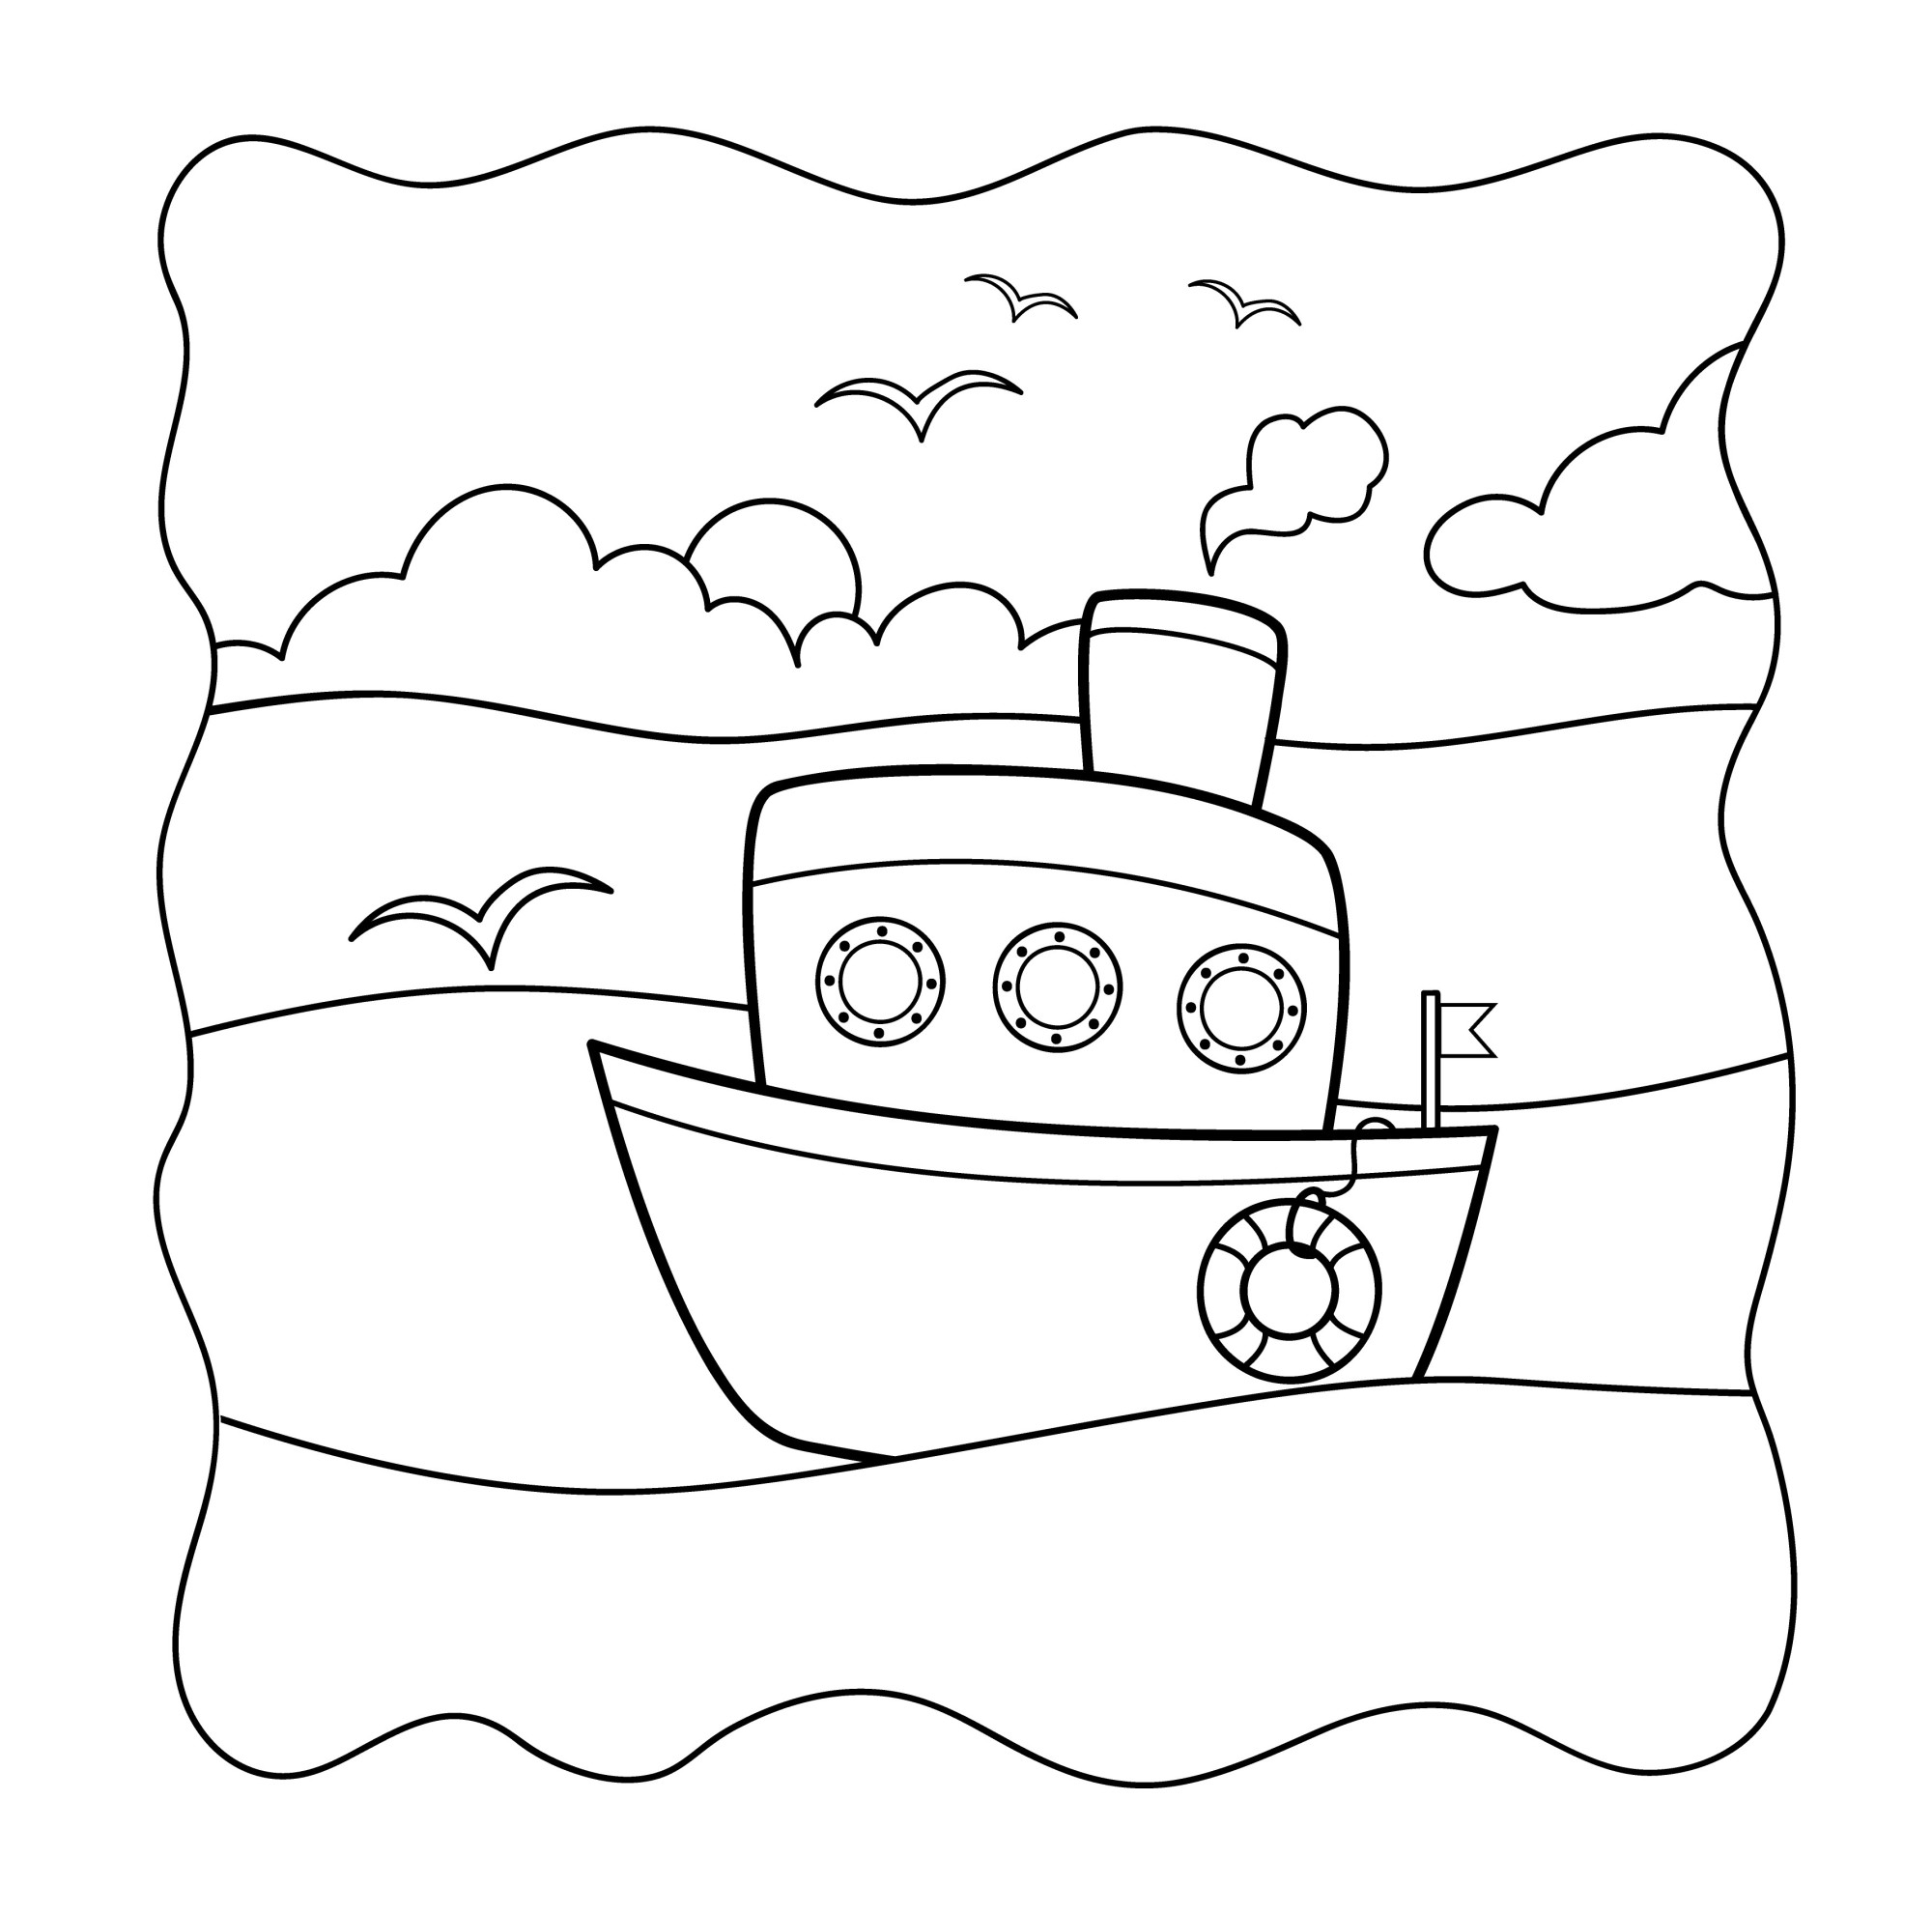 Раскраска для детей: игрушечный корабль в море с чайками